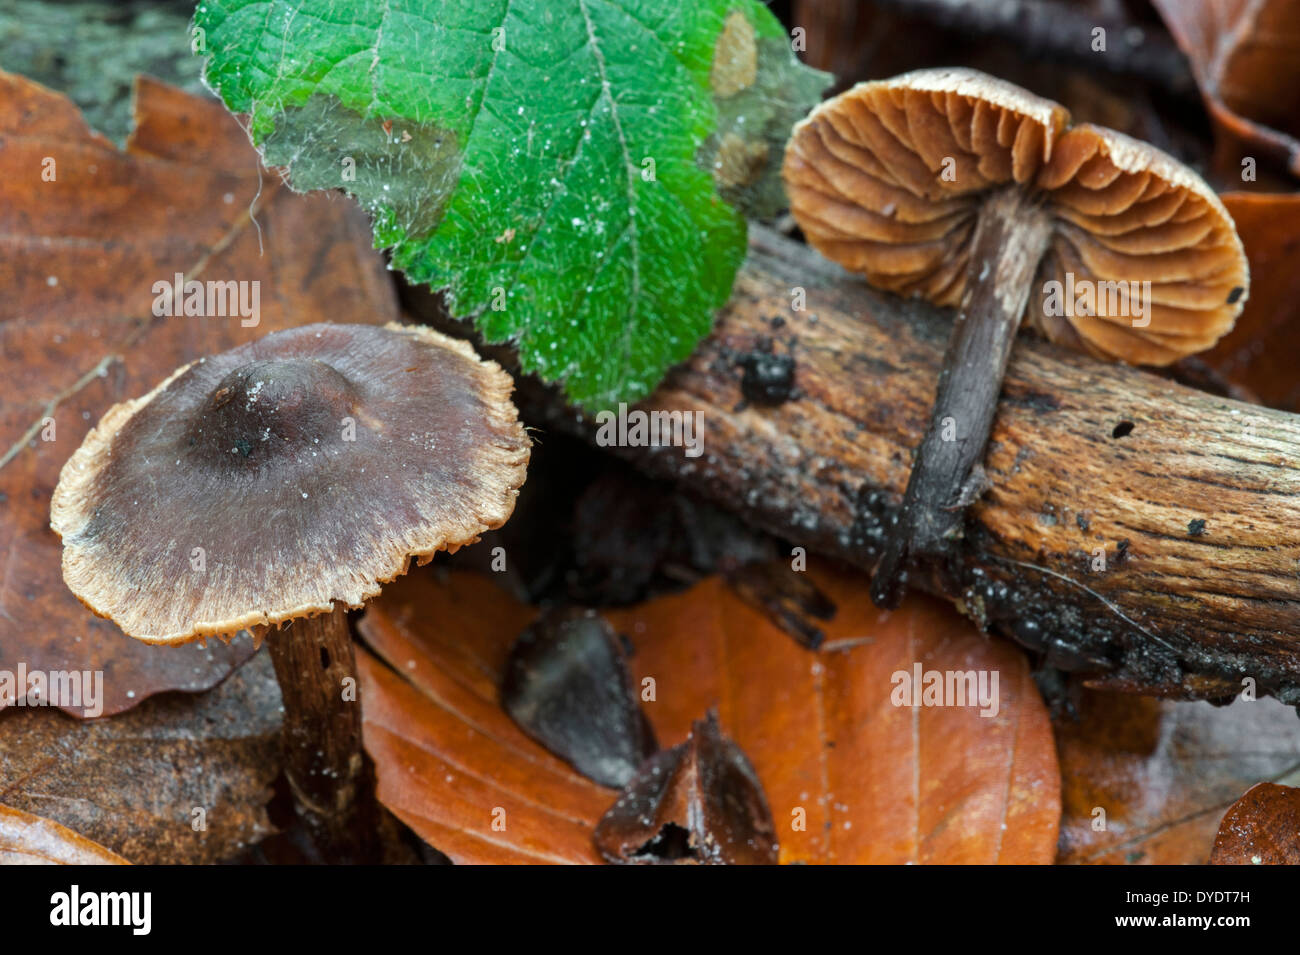 Star fibrecap (Inocybe asterospora) showing underside in autumn forest Stock Photo